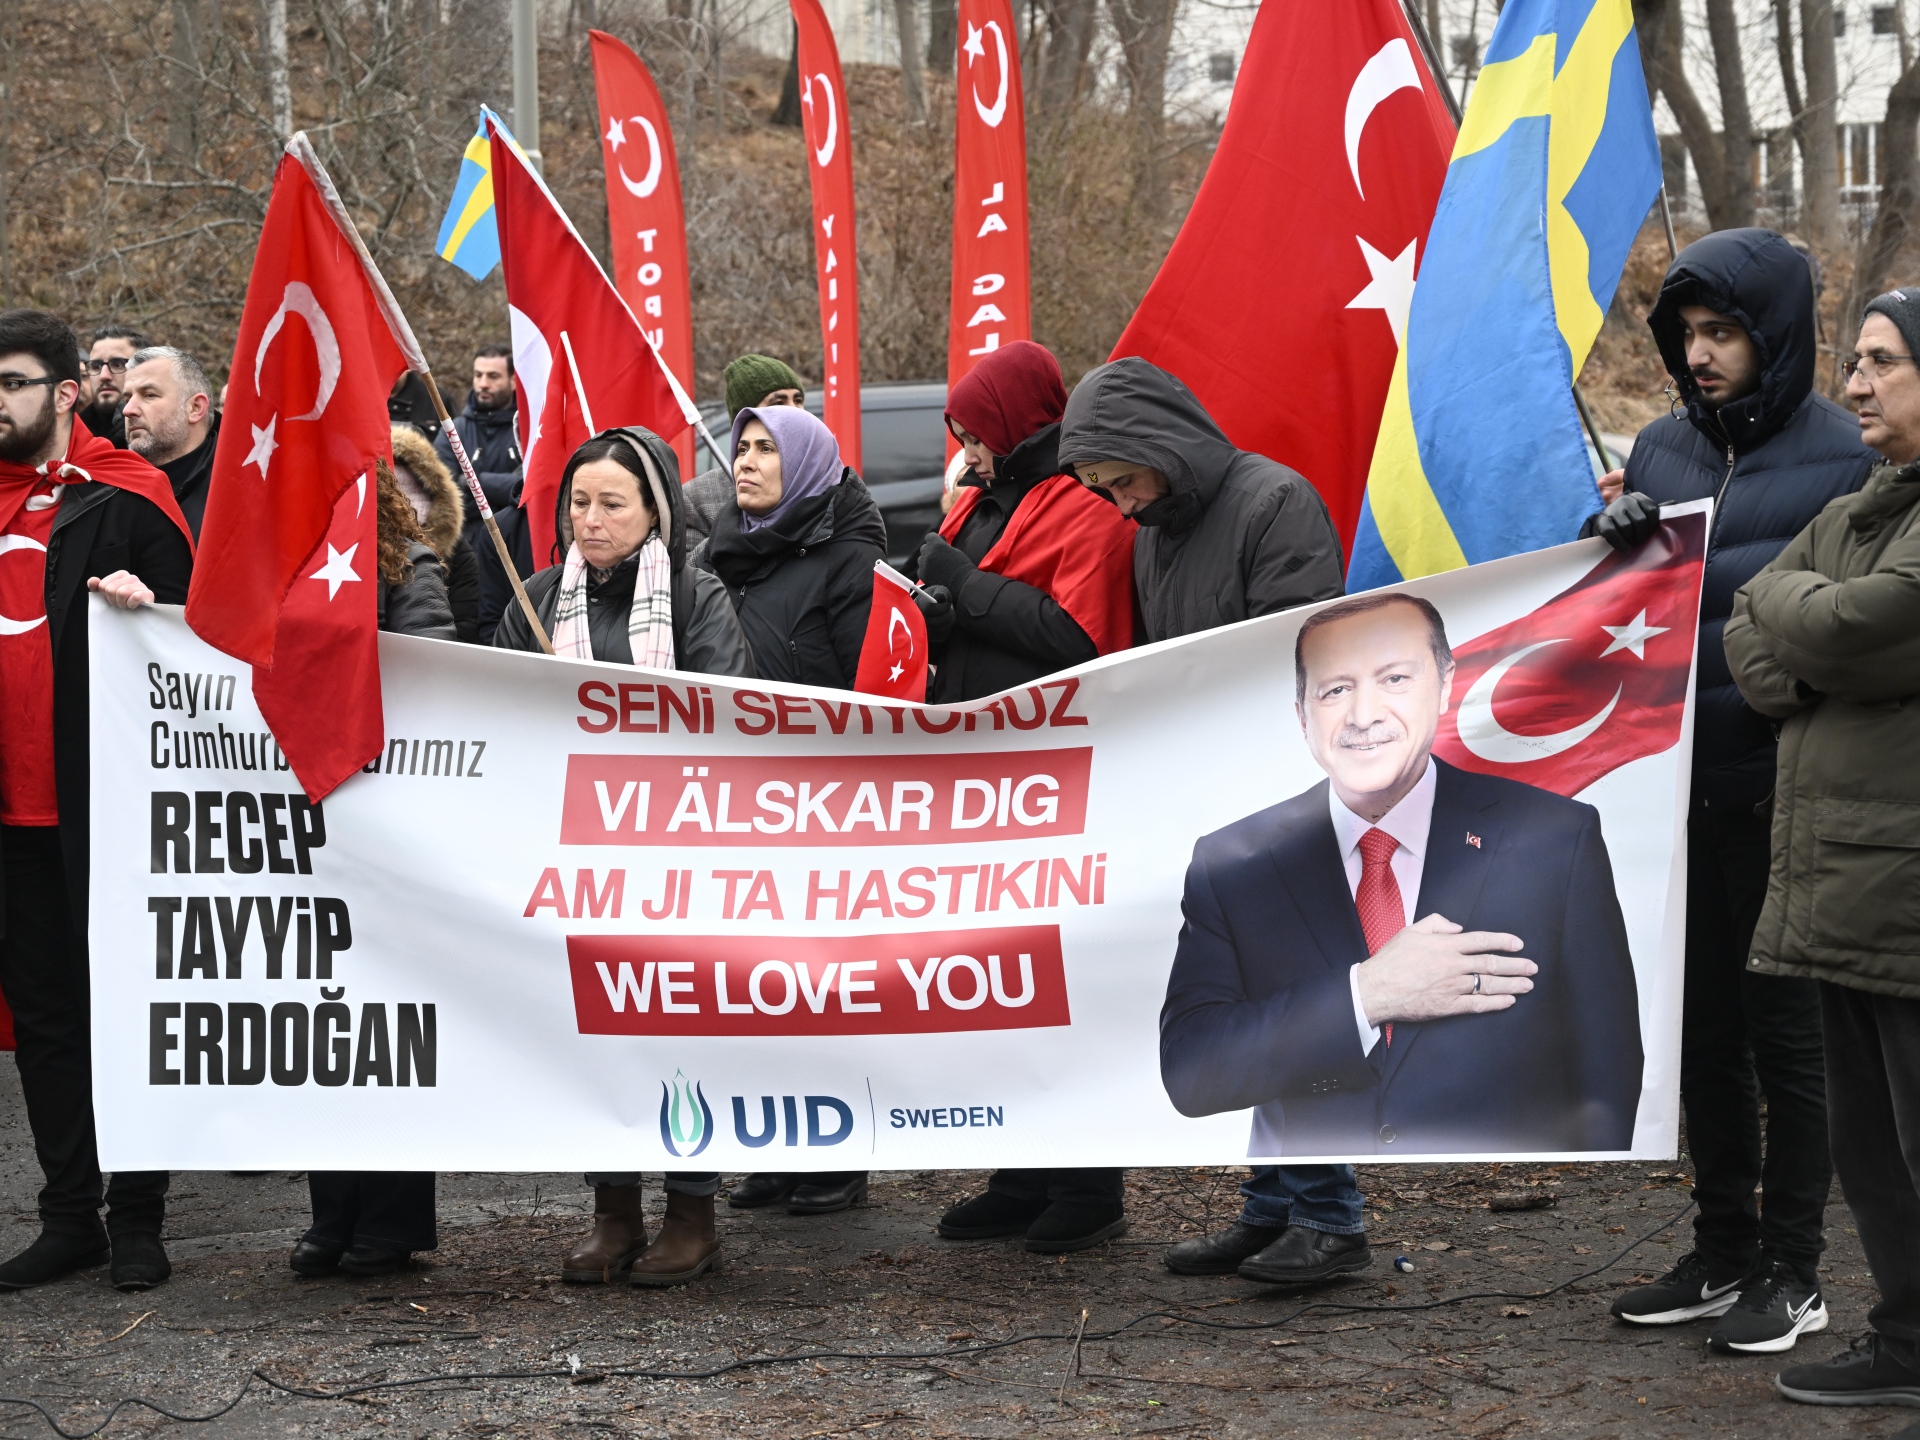 Turkish anger after Quran burning, Kurd protests in Sweden